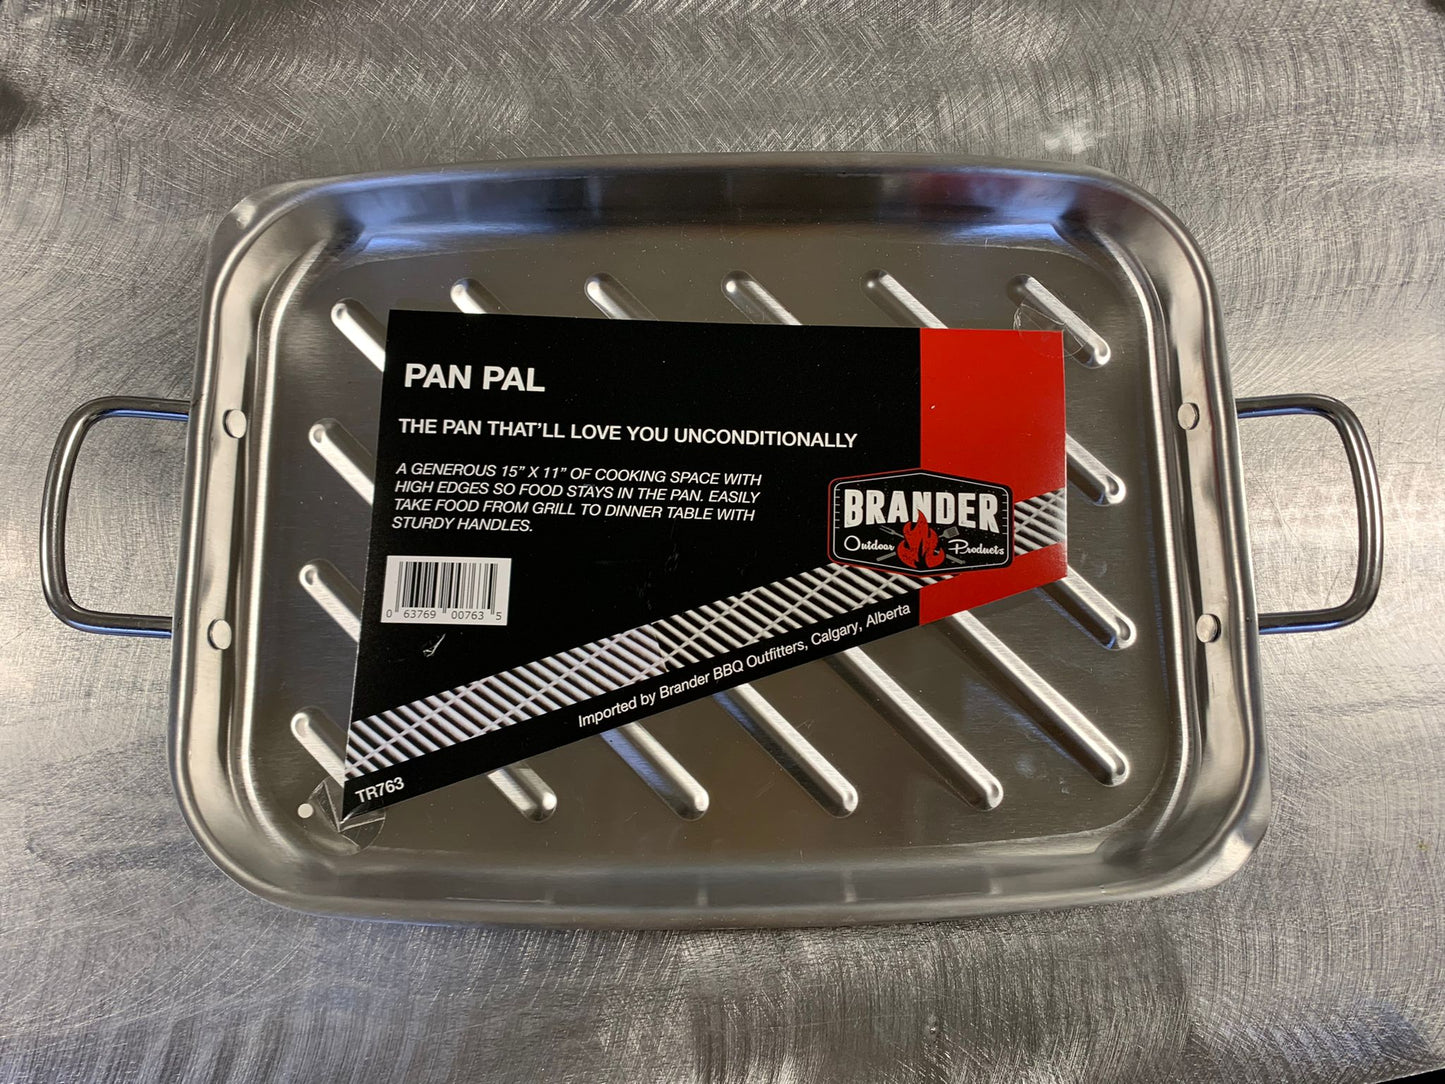 The Brander Pan Pal - Dishwasher-safe Grill Pan